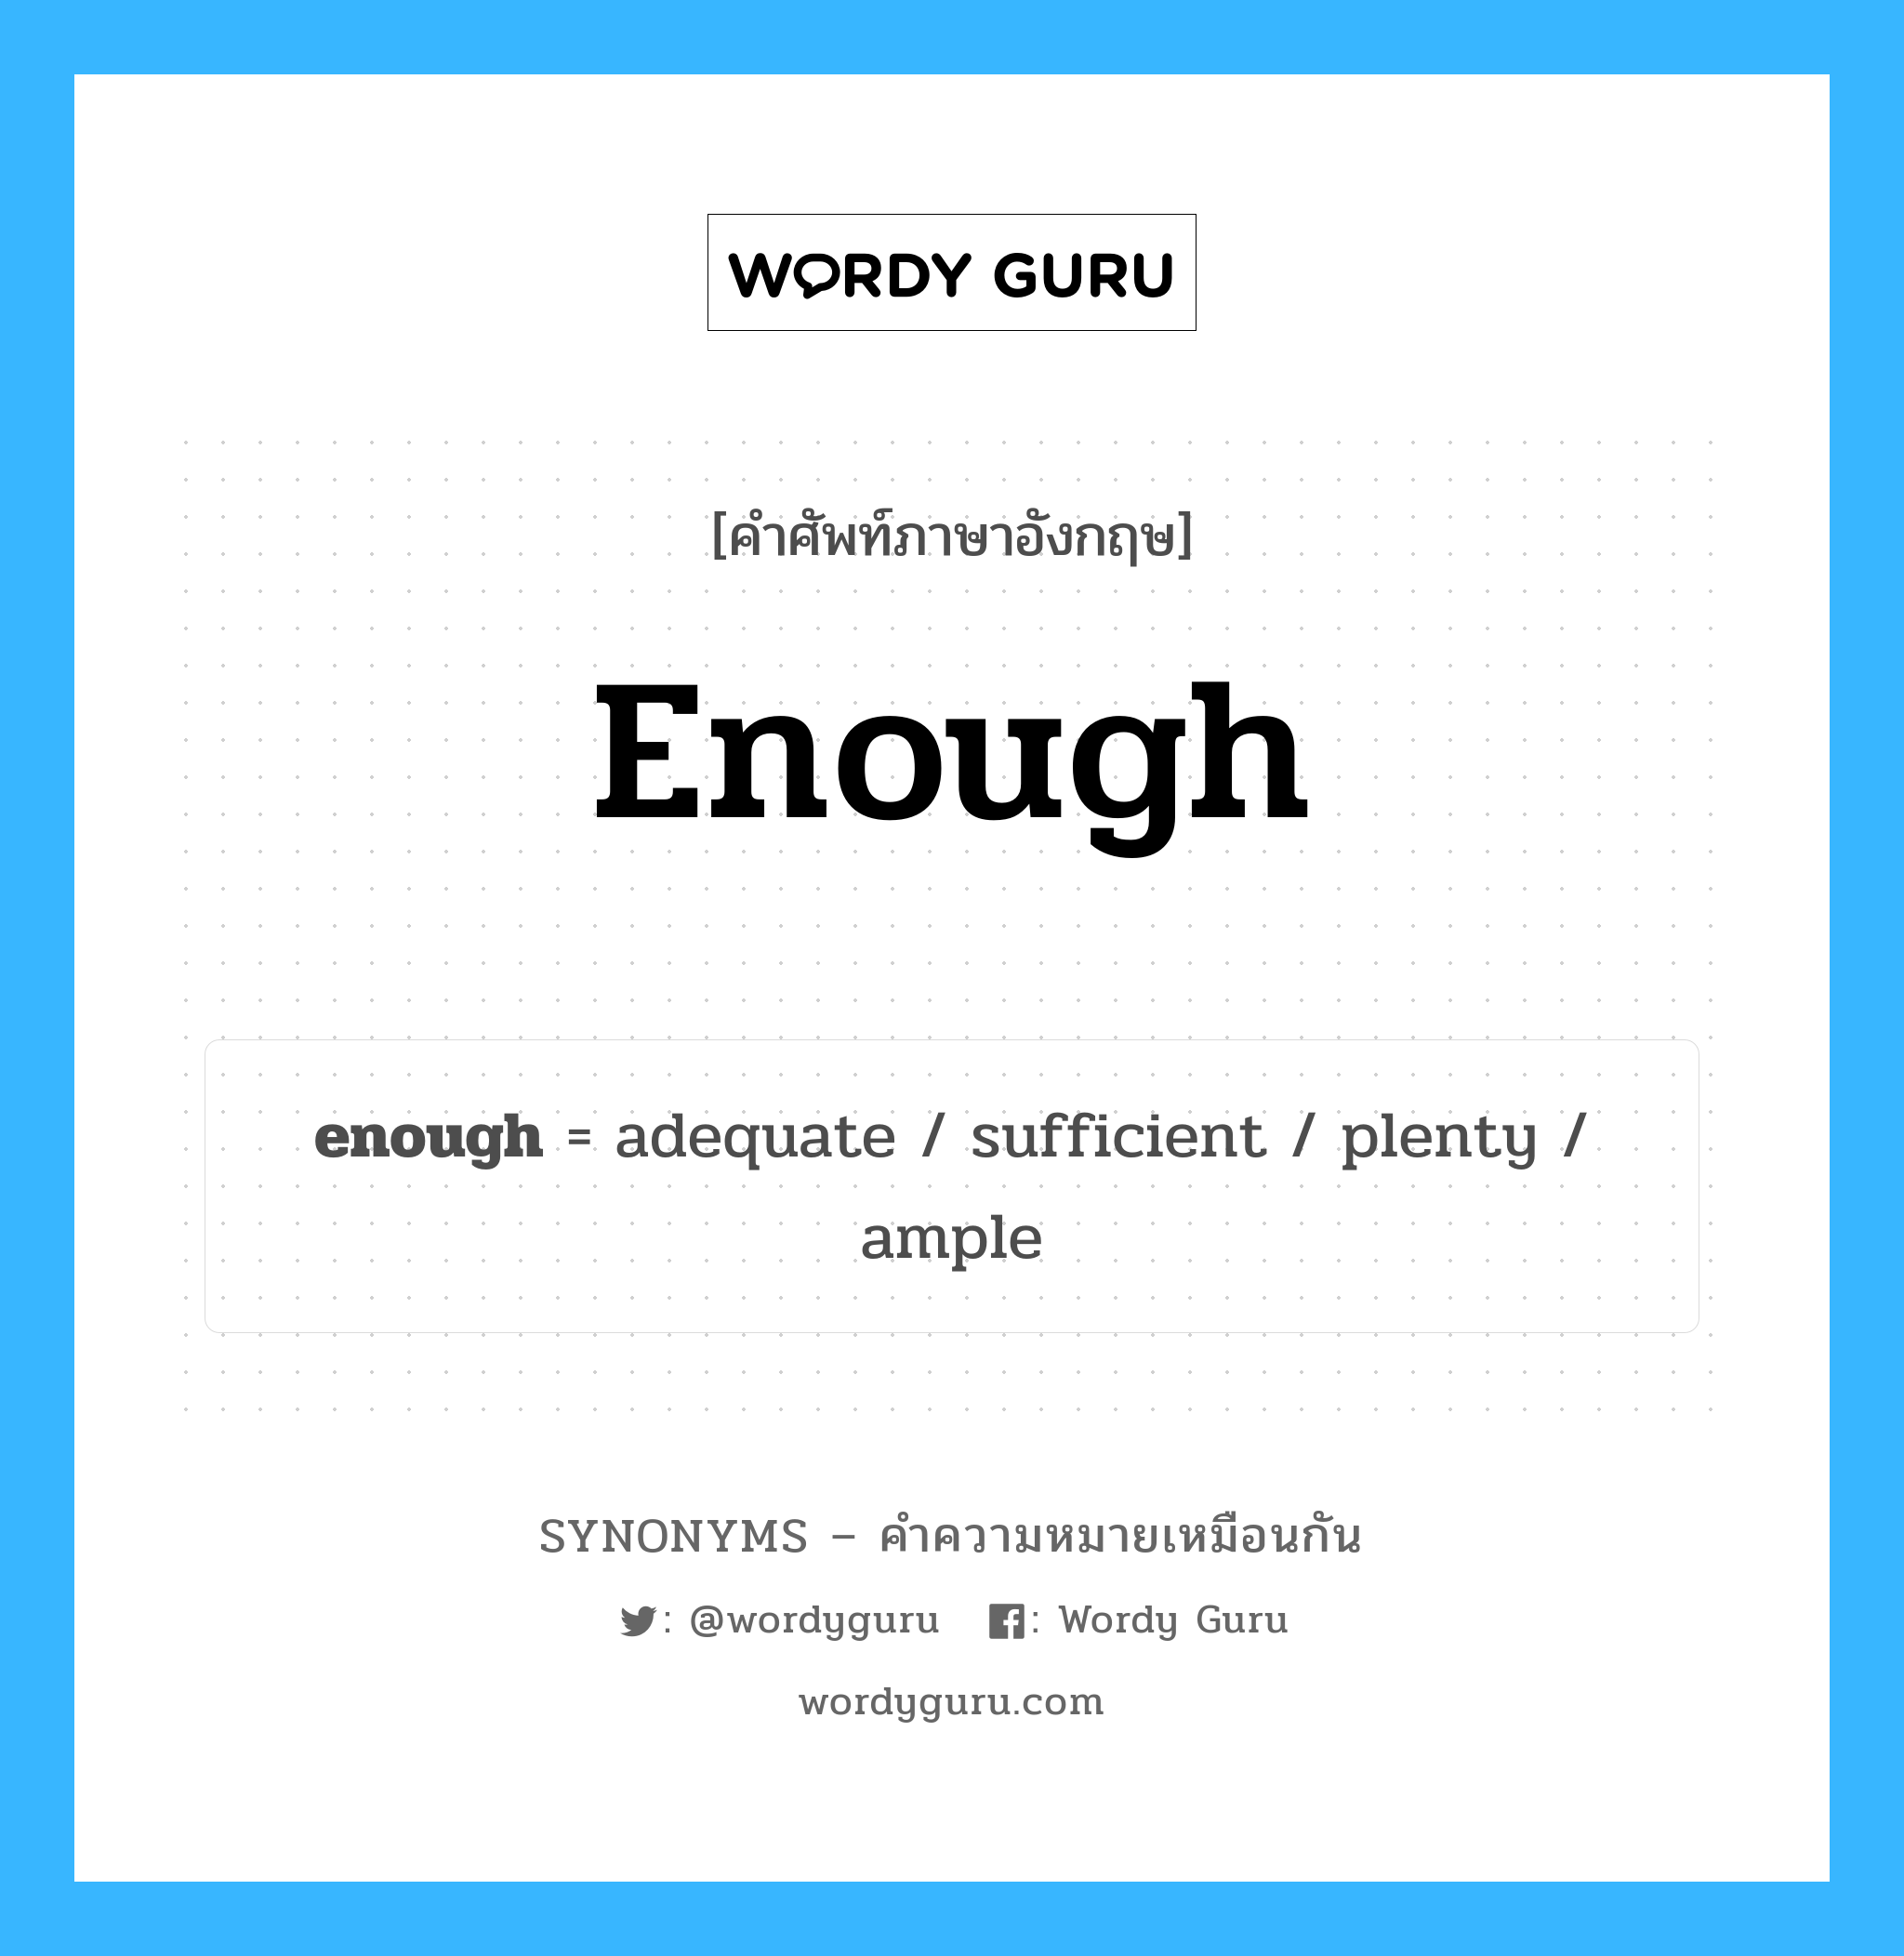 adequate เป็นหนึ่งใน enough และมีคำอื่น ๆ อีกดังนี้, คำศัพท์ภาษาอังกฤษ adequate ความหมายคล้ายกันกับ enough แปลว่า เพียงพอ หมวด enough